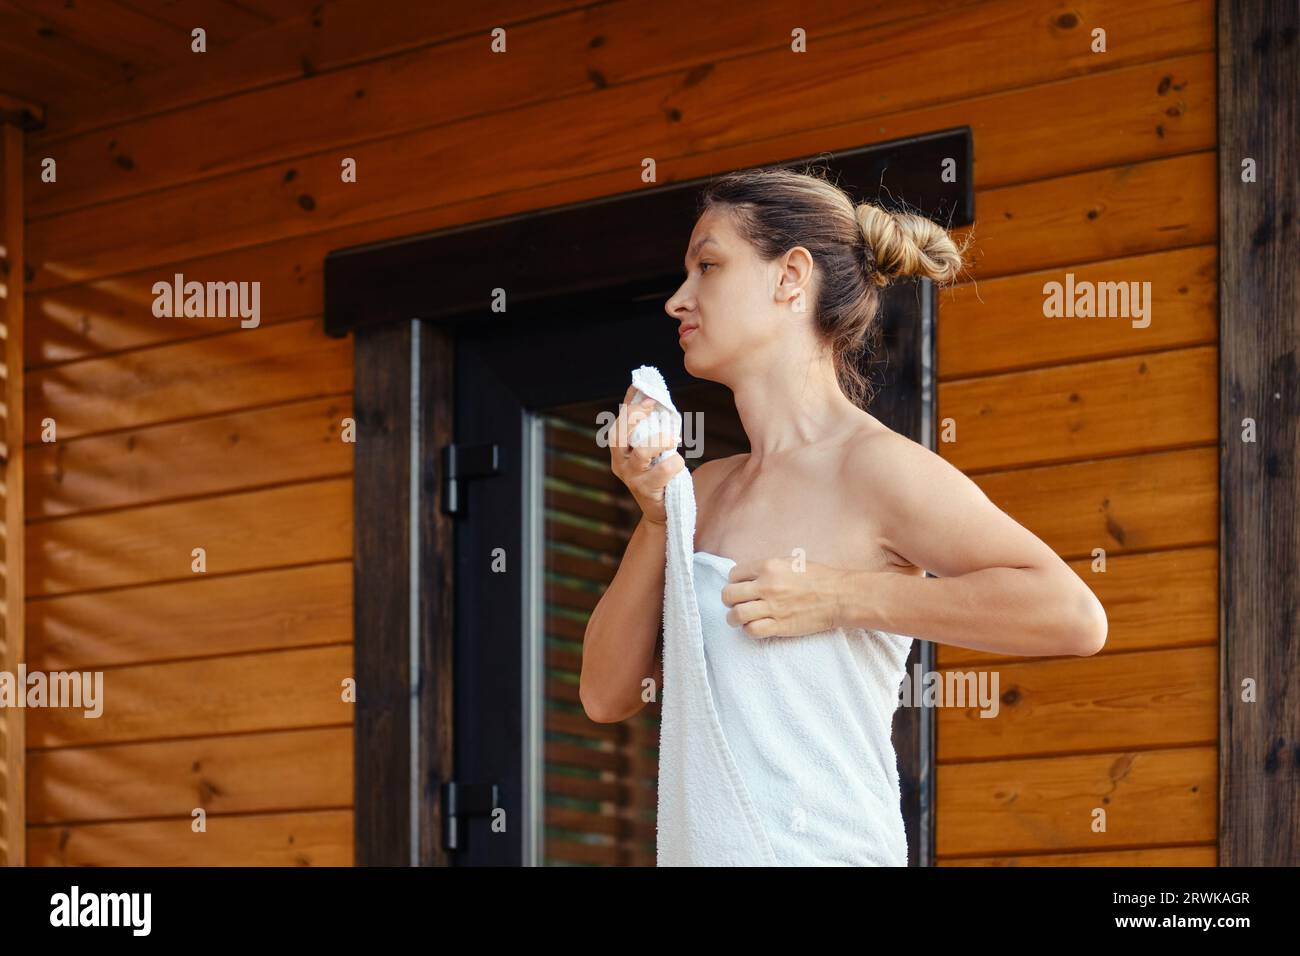 Una donna si avvolge in un asciugamano dopo aver lasciato la sauna Foto Stock